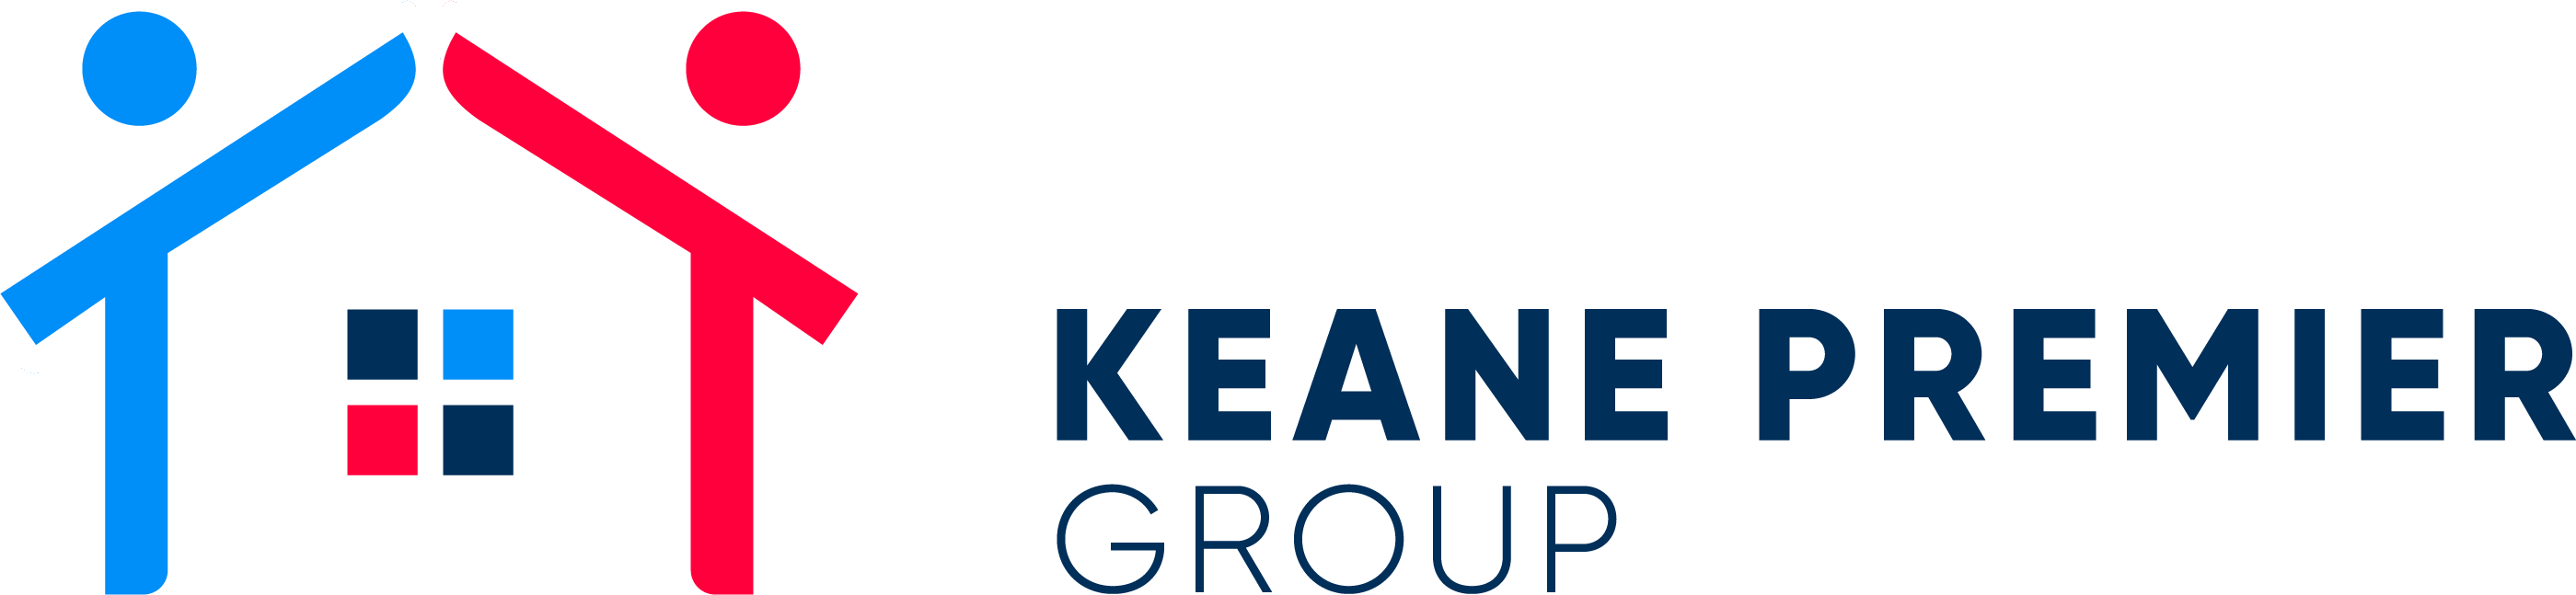 logo for Keane Premier Group